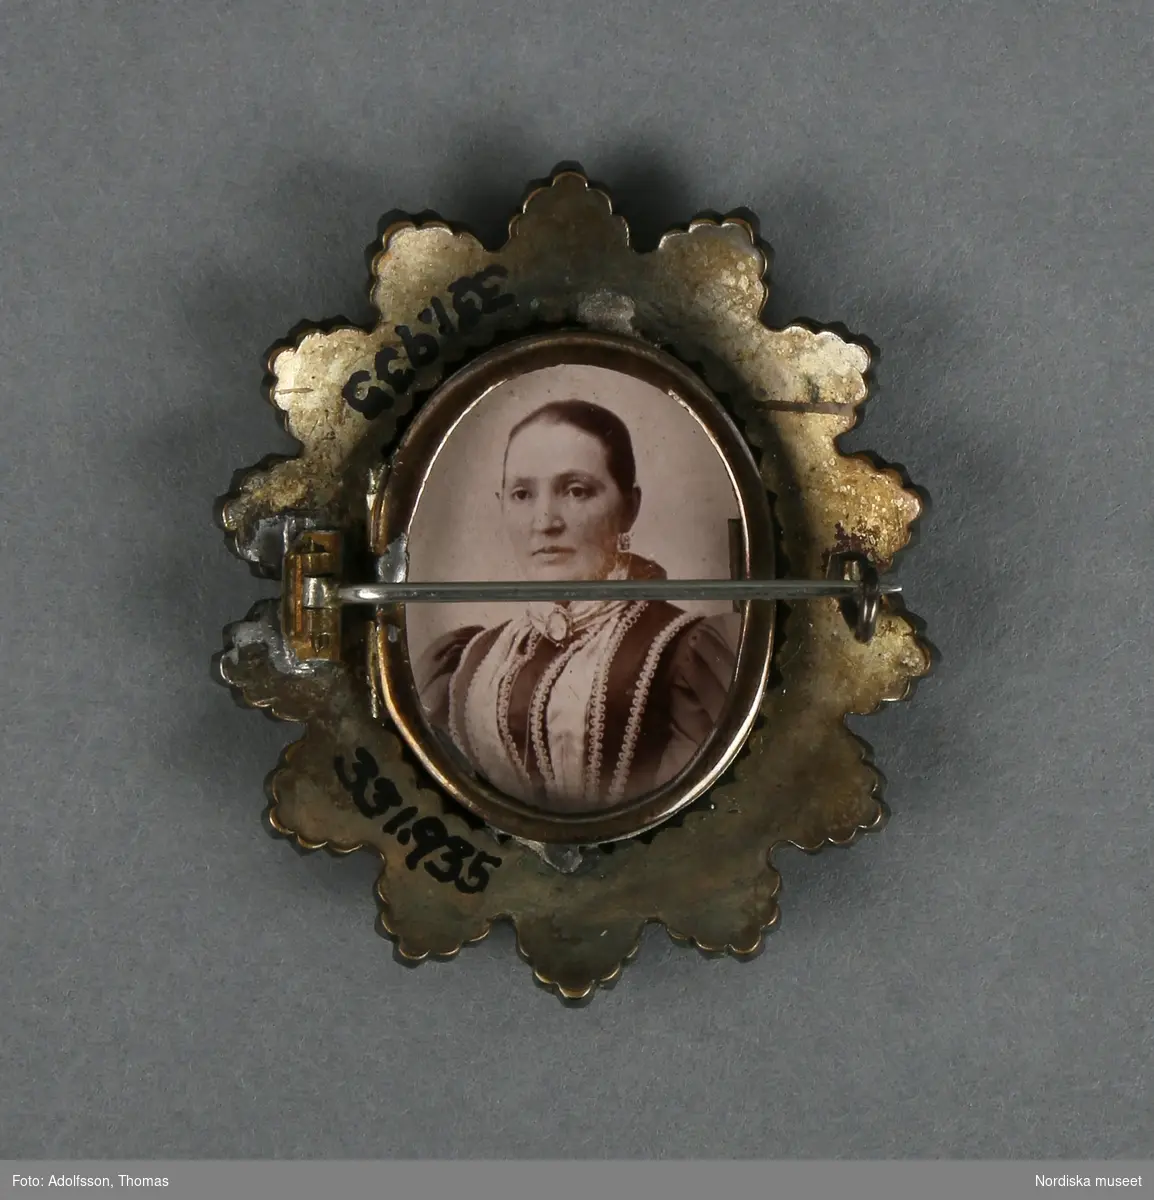 Brosch av gulmetall och granater (eller rött glas) med fotografier. Framsidan med uddformig krans klädd med granater (?) och innanför en smal ram av gulmetall med fotografi bakom glas.   Baksidan med nål och hake, samt smal oval ram (likadan som på framsidan) med foto. Fotografierna som det ena föreställer en man och det andra en kvinna, (trol. tagna på 1880--1890-talet) är lösa och kan byta plats med varandra, beroende på vilket foto man vill ha mot fram, respektive baksida. 
Ramen på baksidan är öppningsbar. 
Anm. några av granaterna saknas. Glaset till fotot på baksidan saknas
/Leif Wallin 2014-06-24